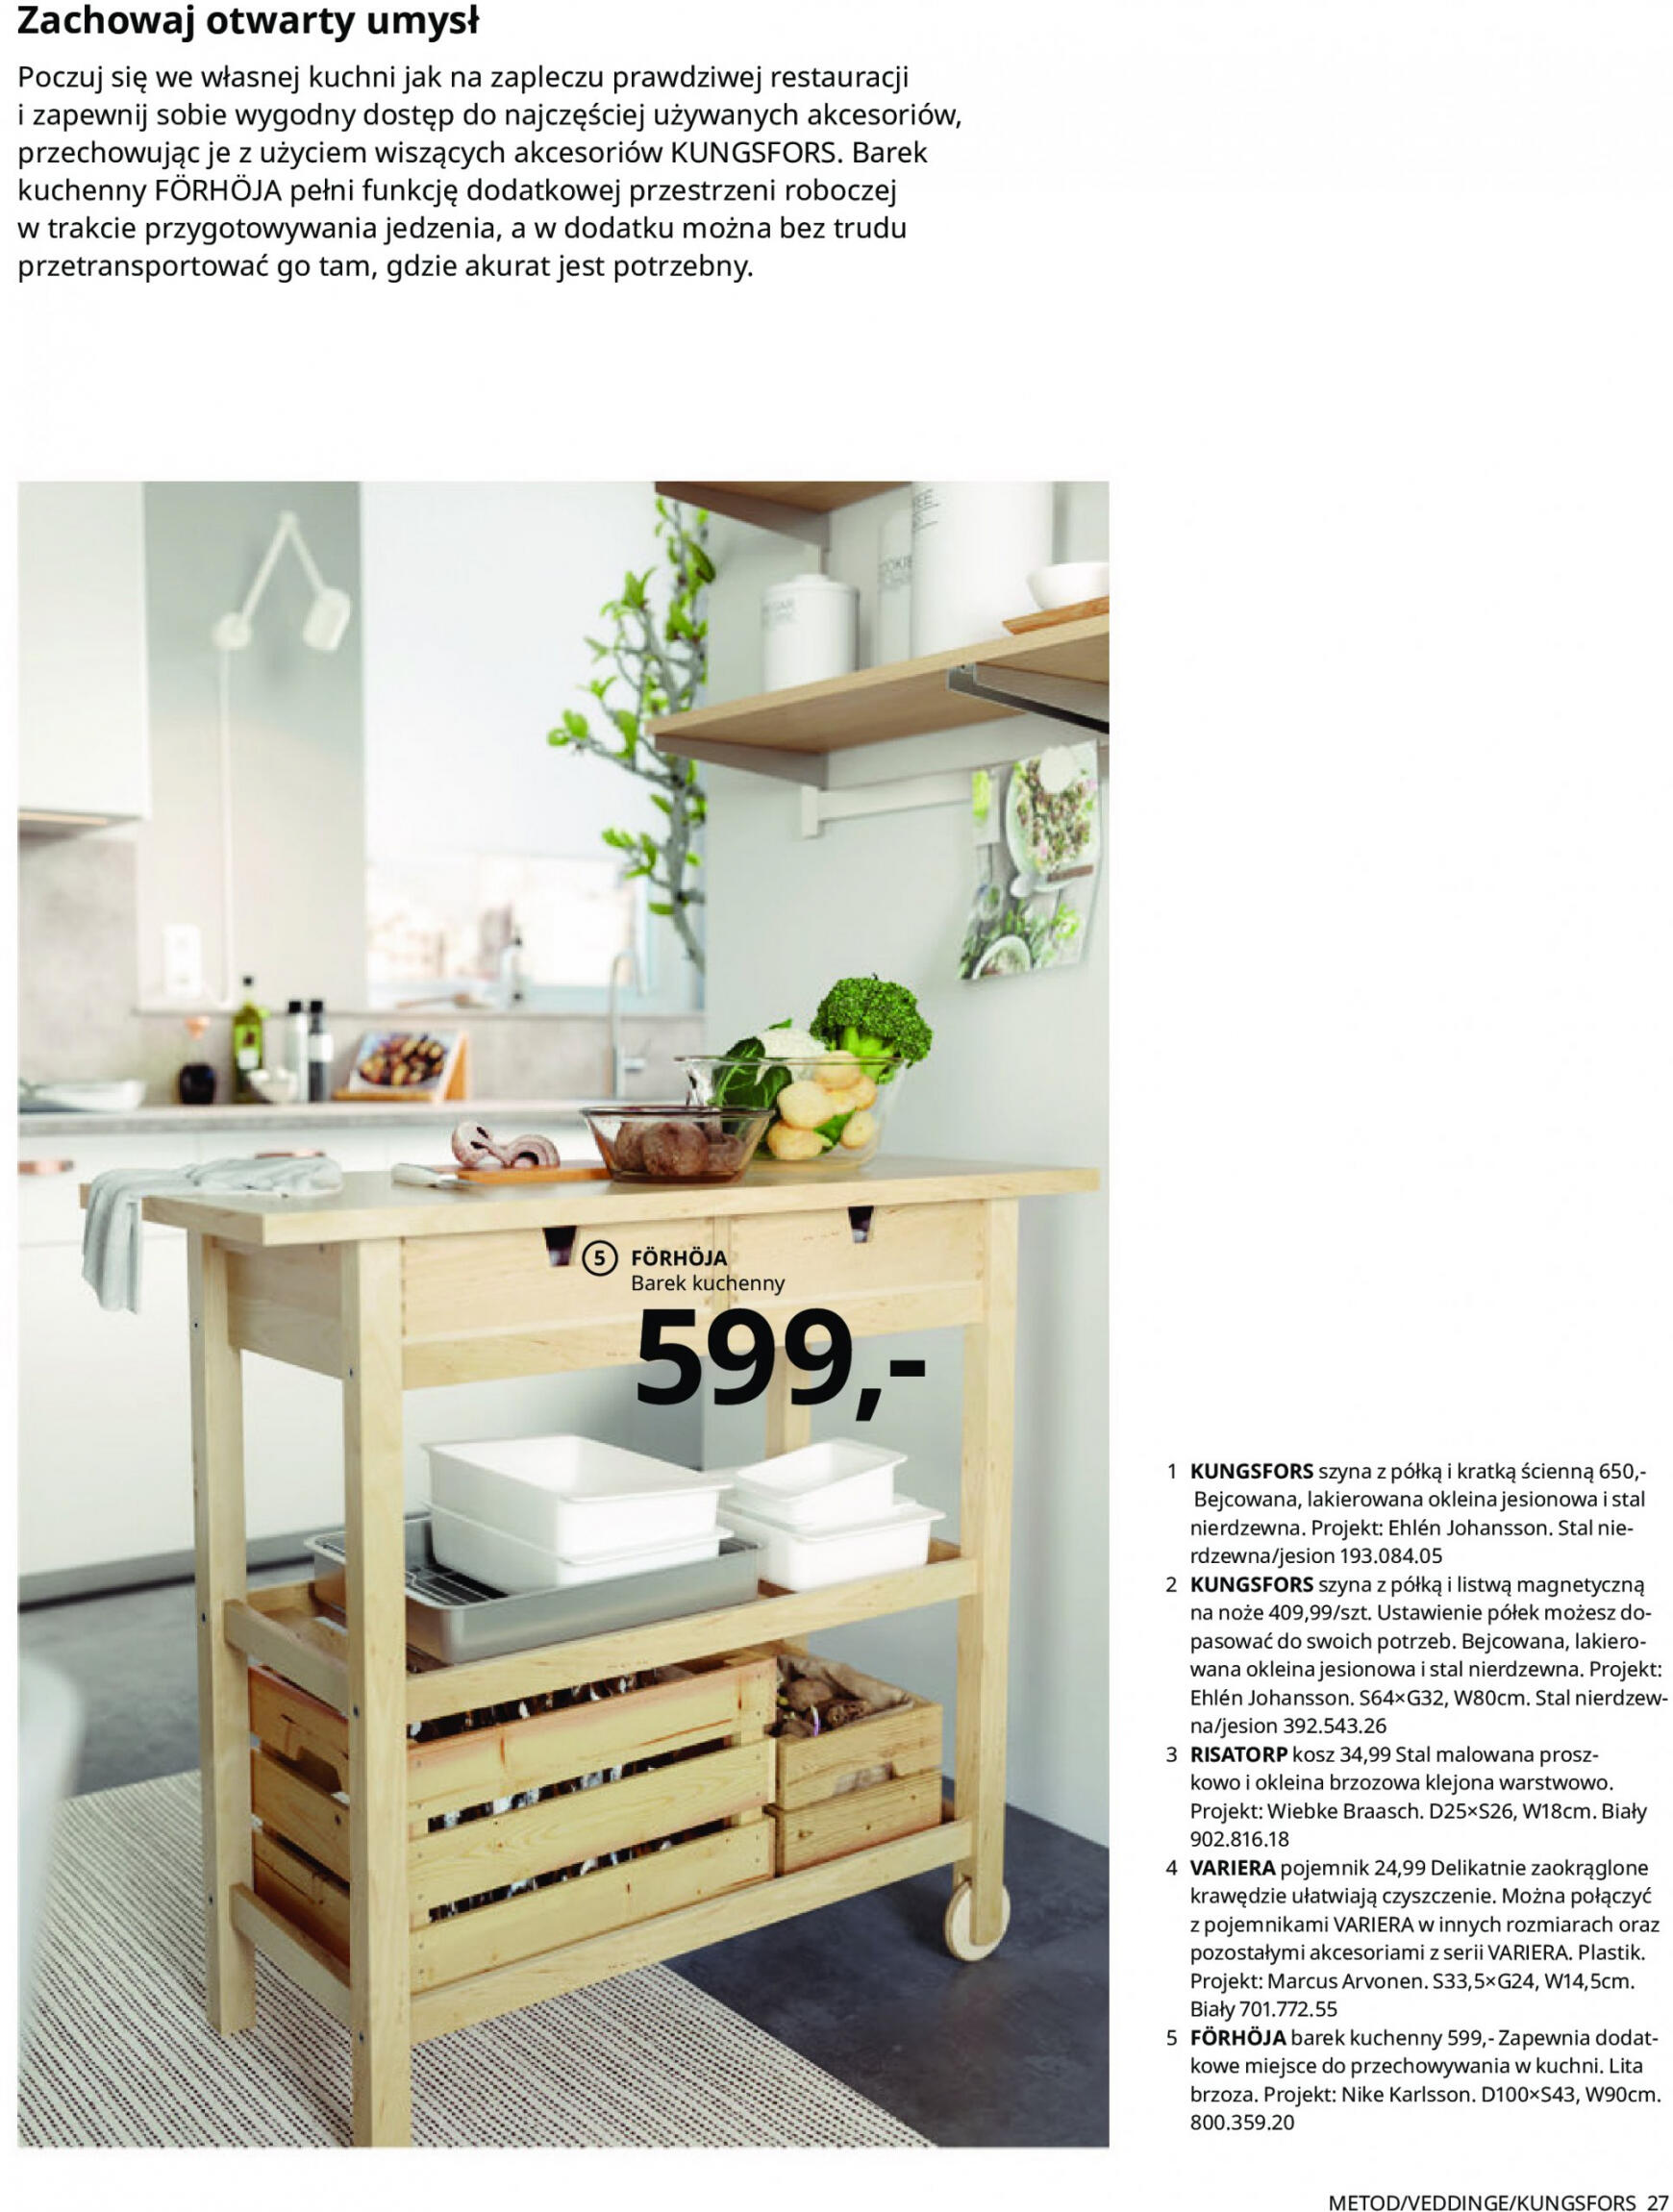 ikea - IKEA - Kuchnie - page: 27